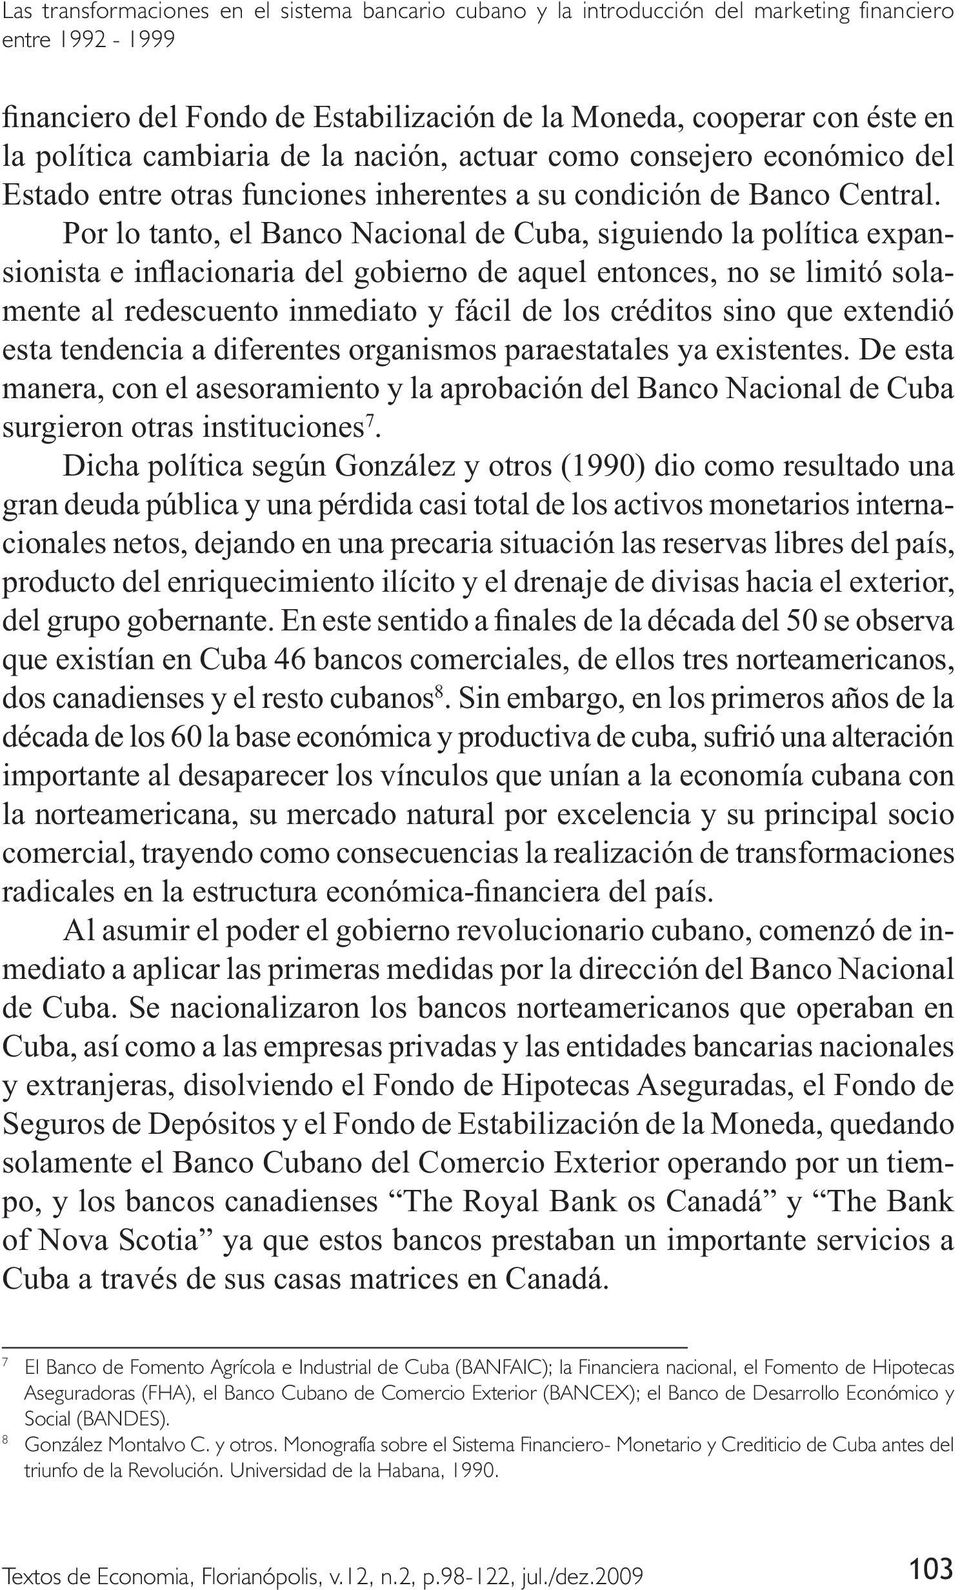 (BANCEX); el Banco de Desarrollo Económico y Social (BANDES). 8 González Montalvo C. y otros.